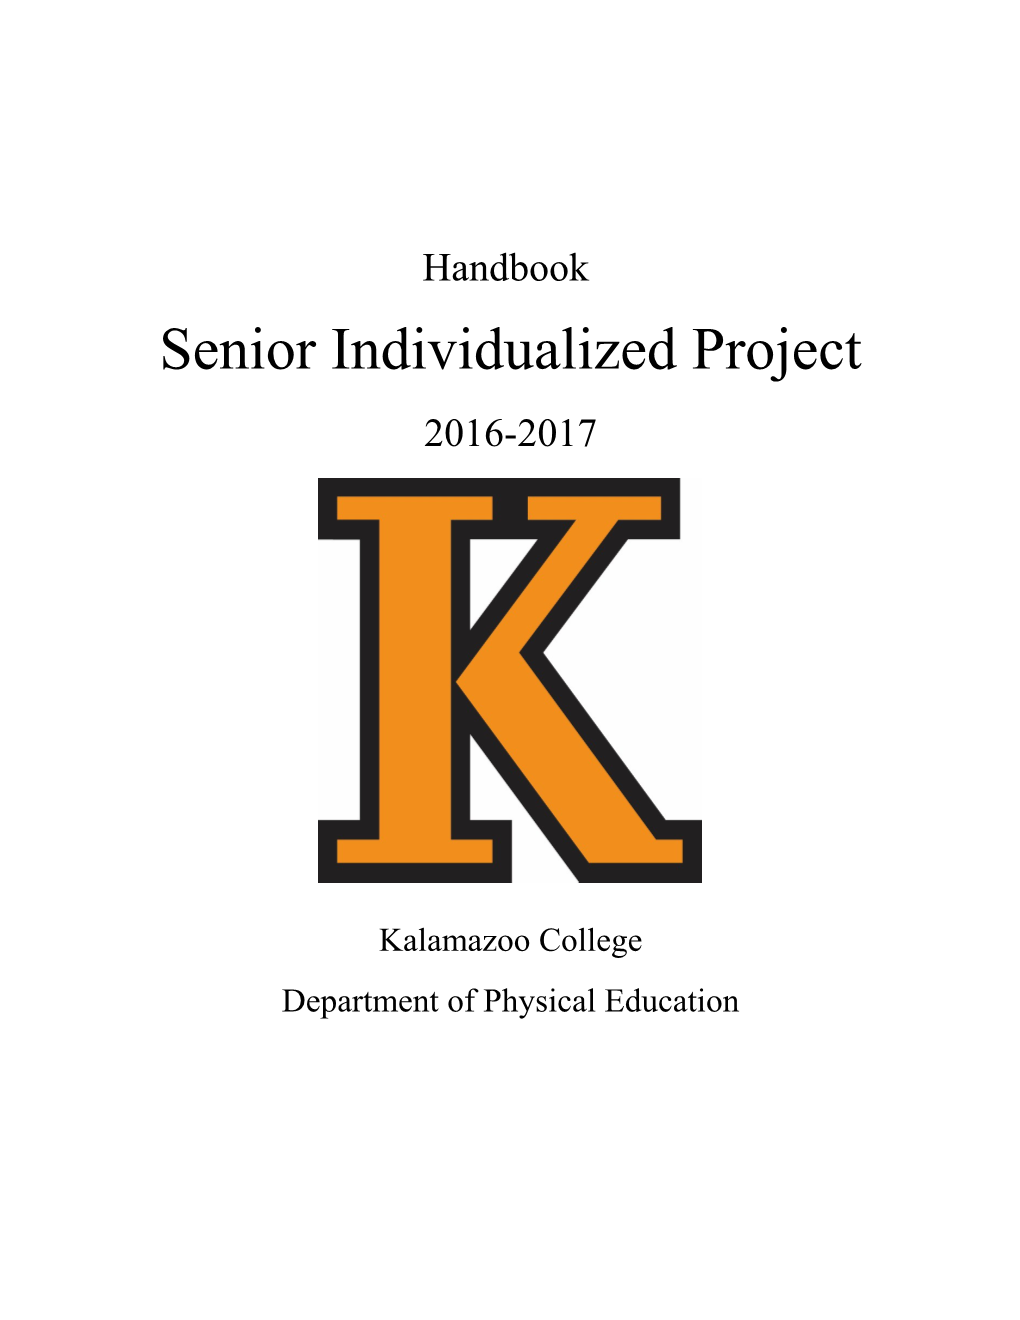 Senior Individualized Project